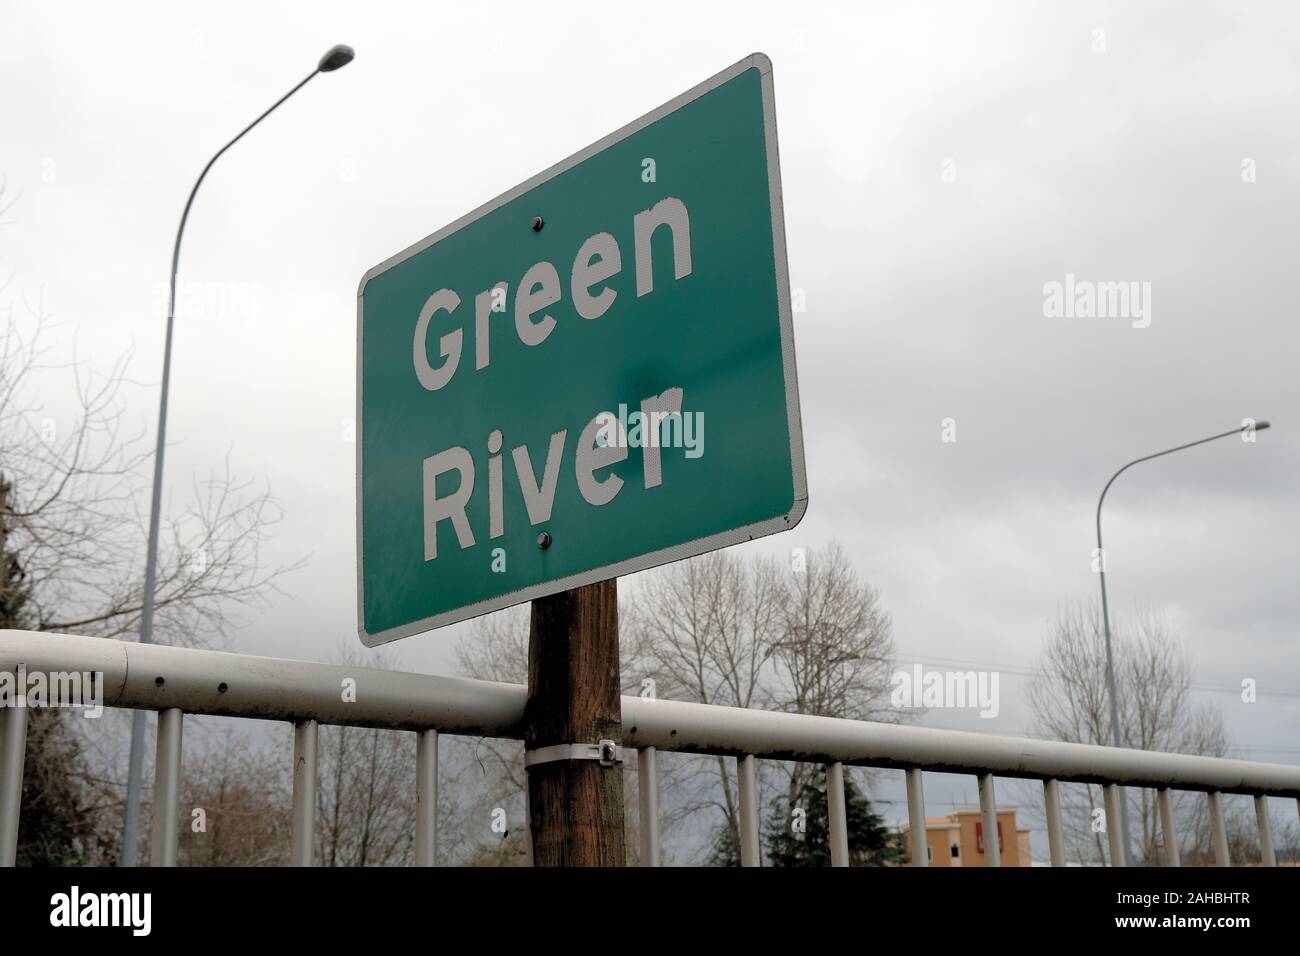 Inscrivez-vous pour la Green River situé sur un passage supérieur de la rue à Seattle, Washington, USA ; river rendu célèbre par Gary Ridgway, le fameux Green River Killer. Banque D'Images